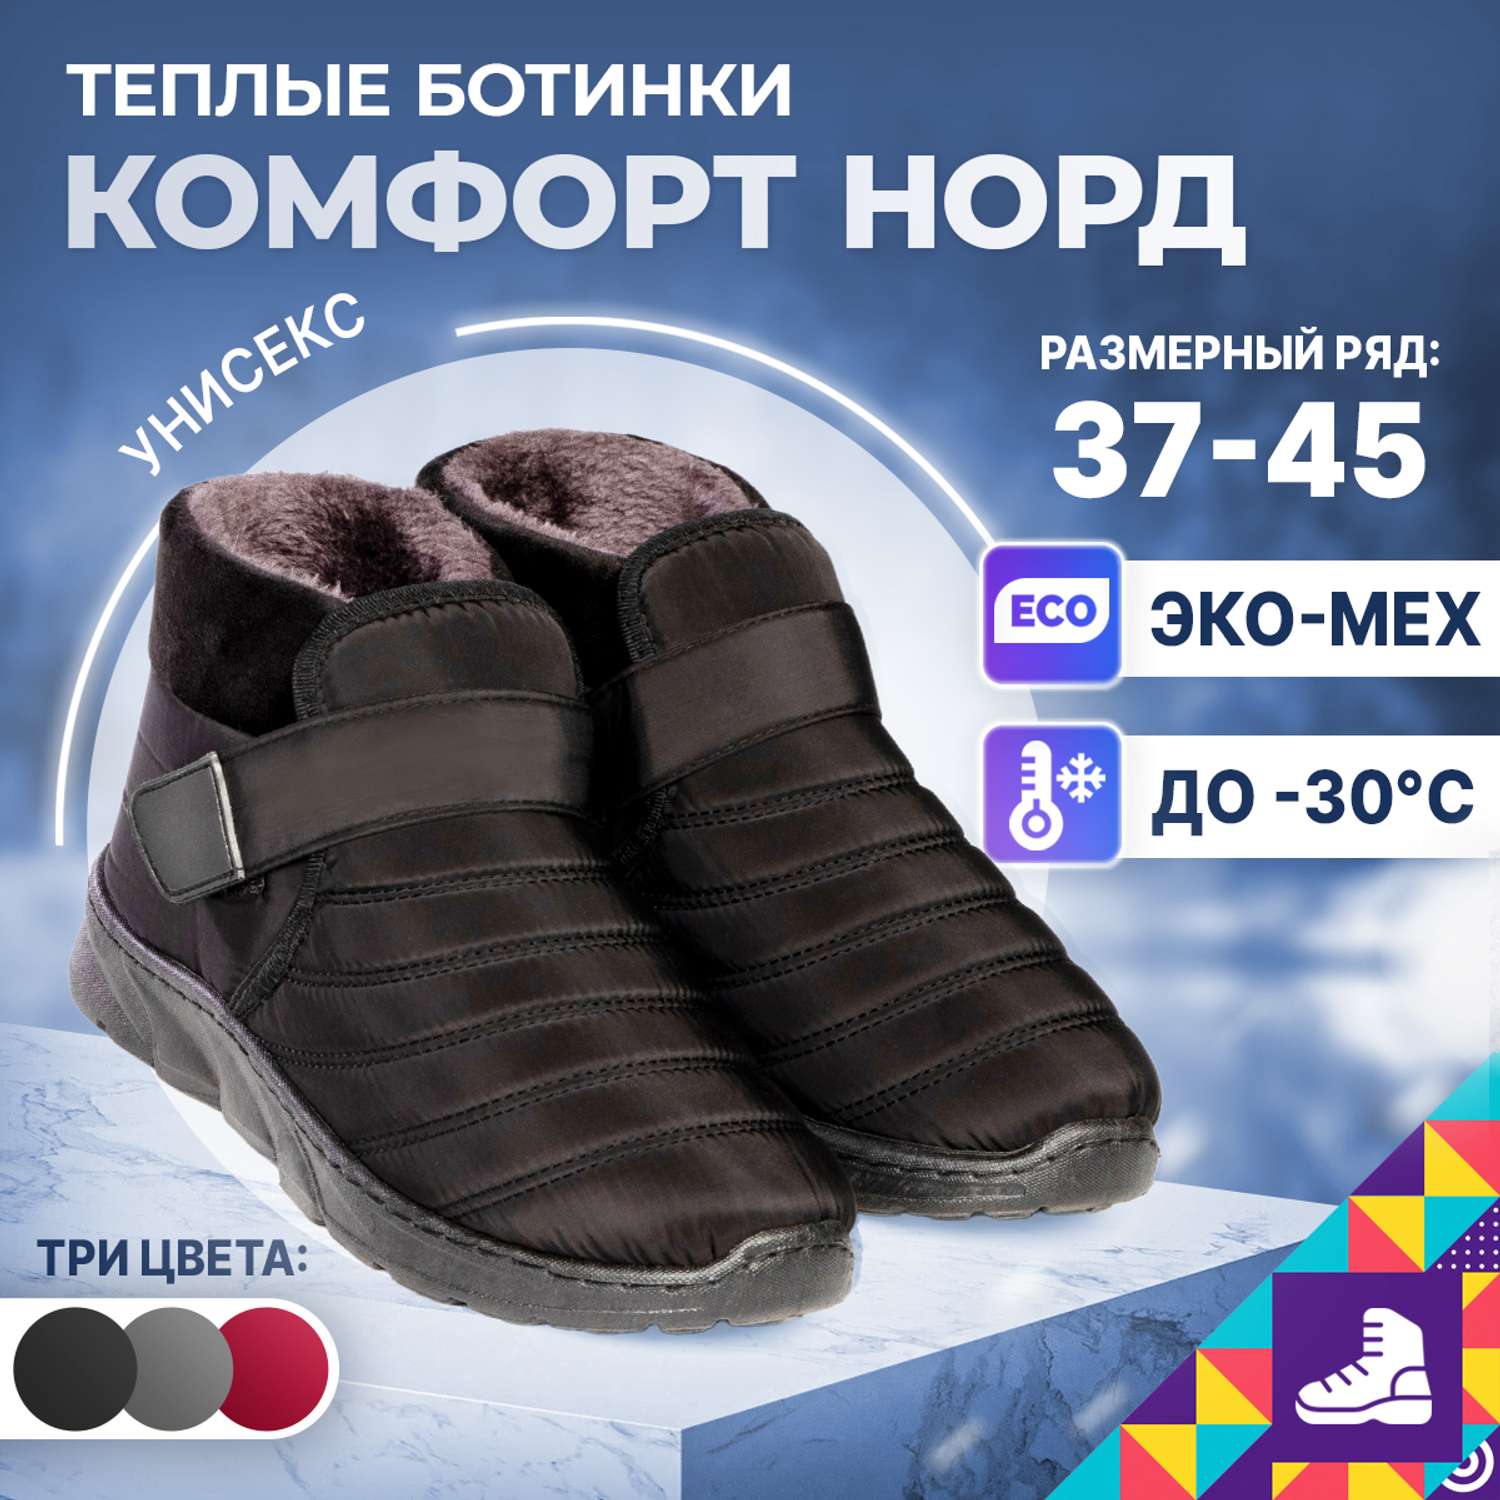 Ботинки Comfort Nord 000150/black - фото 2